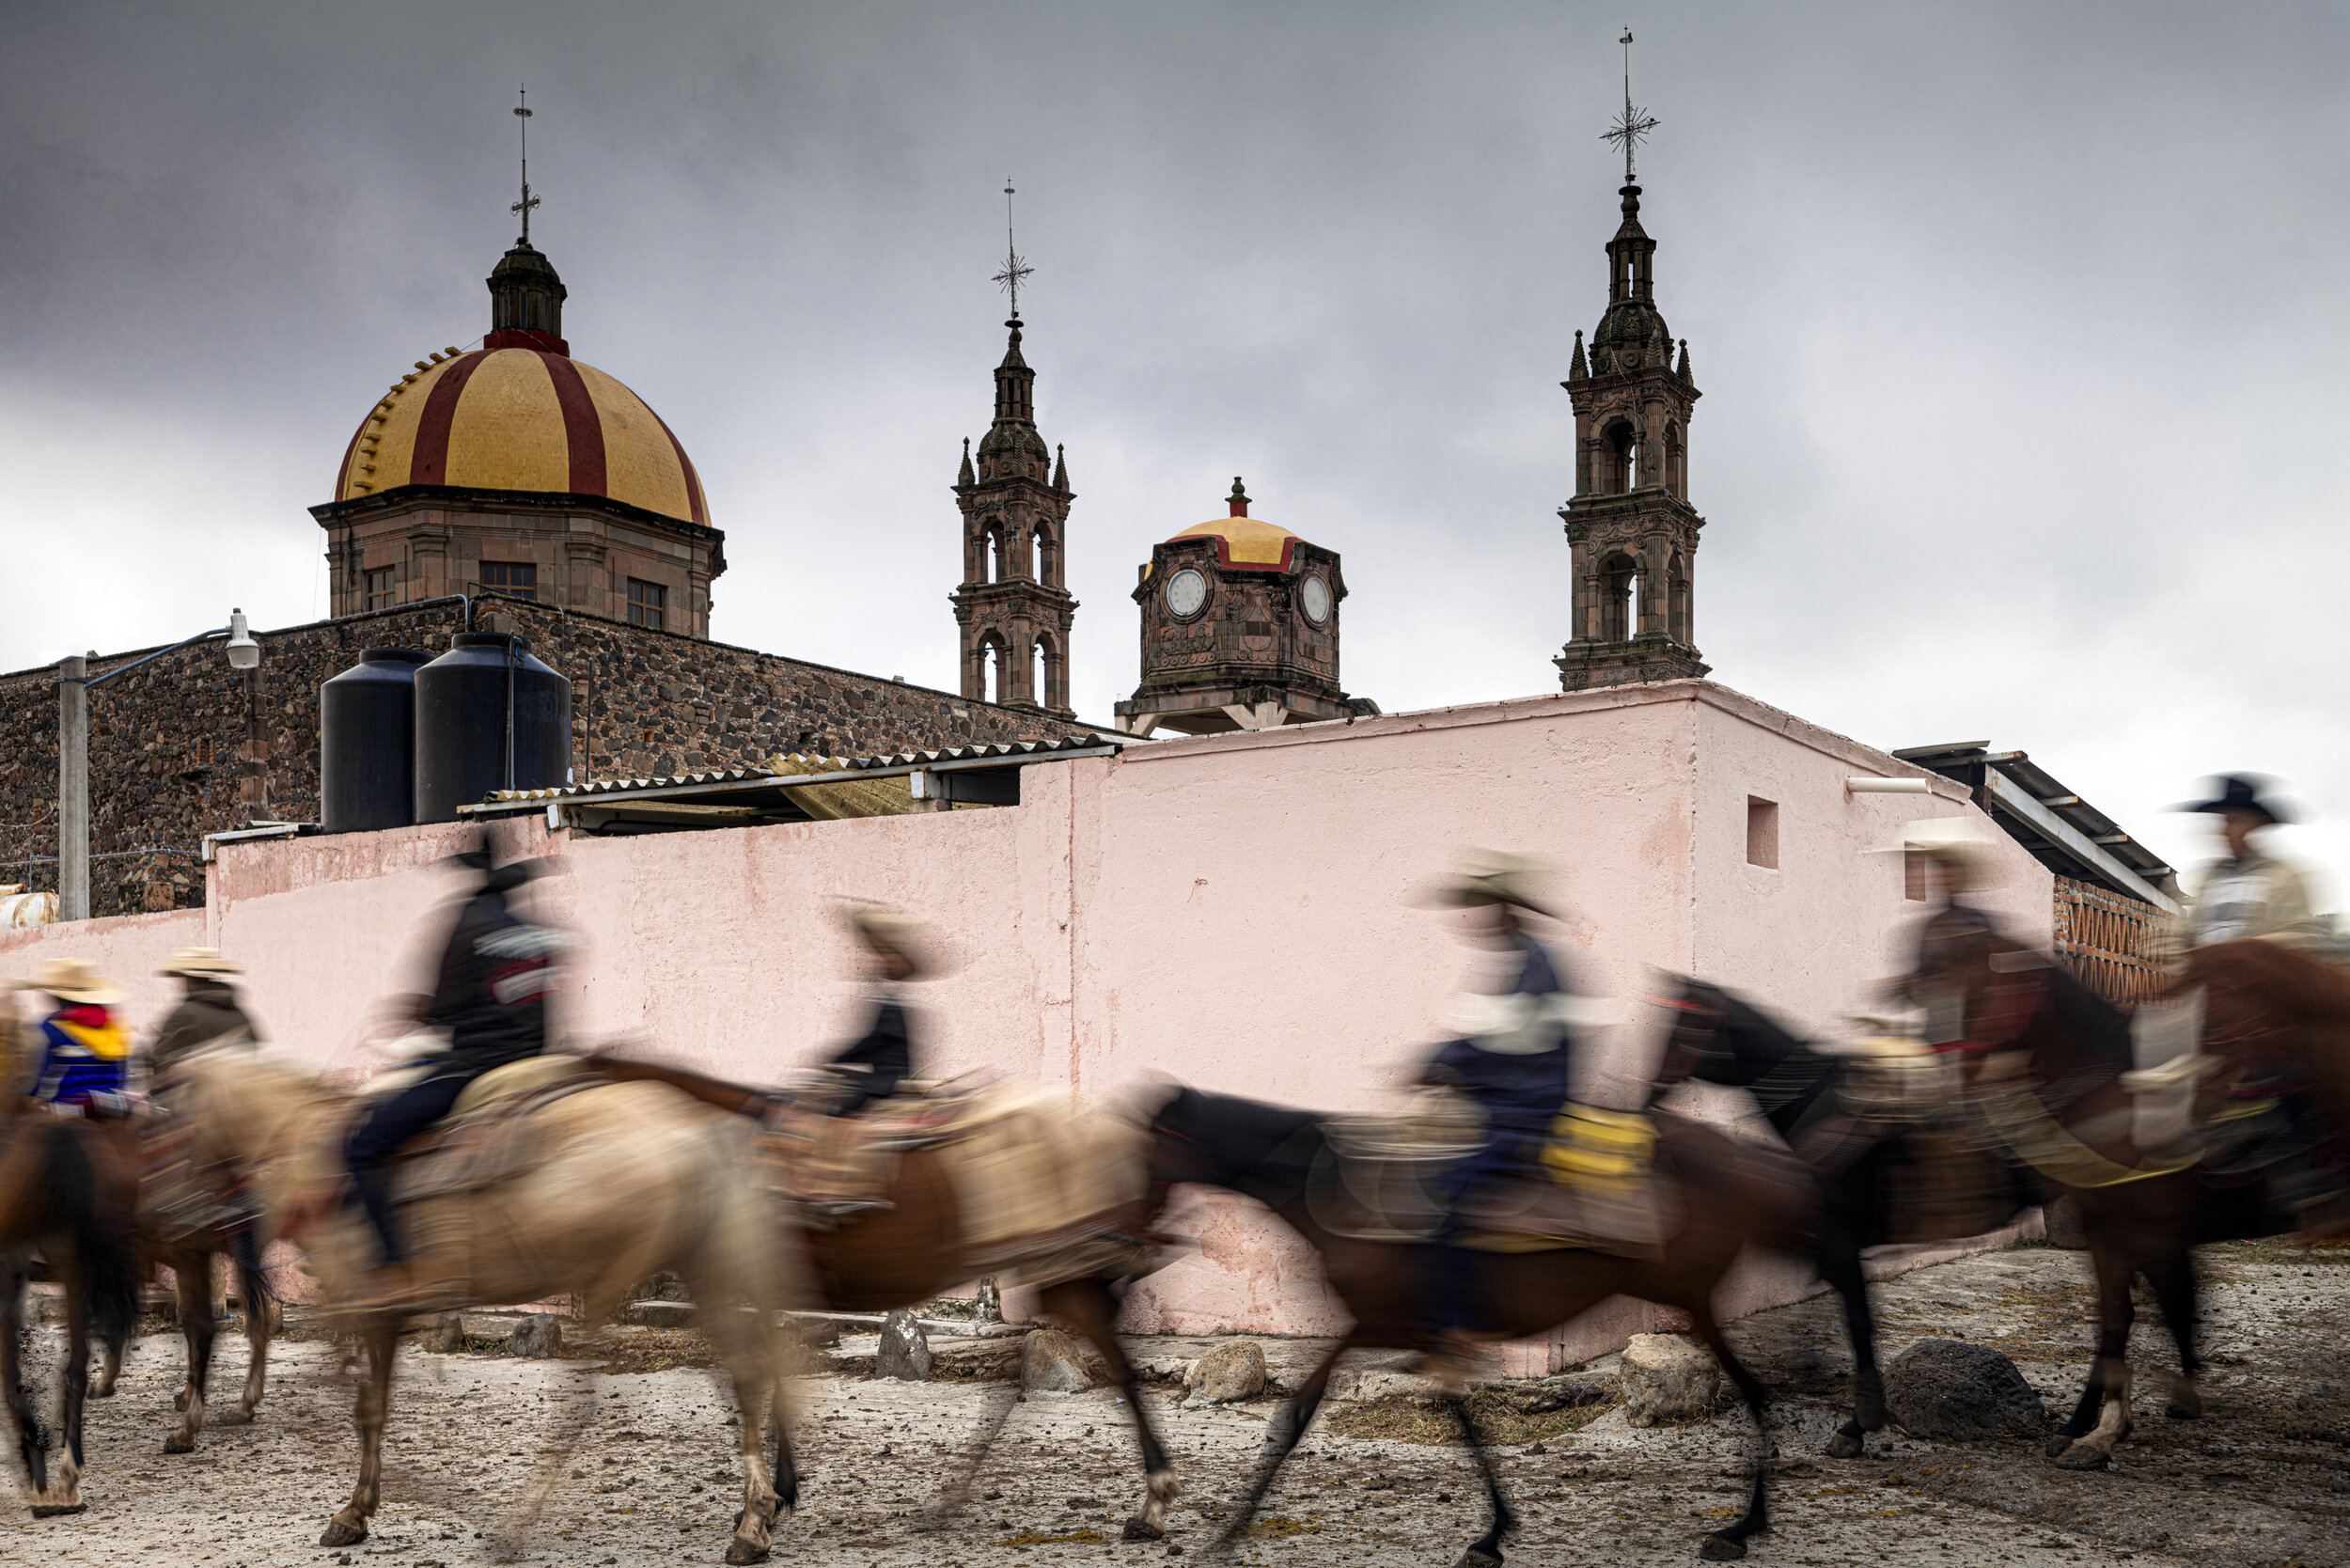  Horse Pilgrimage 1 San Martin de Terreros, Mexico, 2019   3:2  